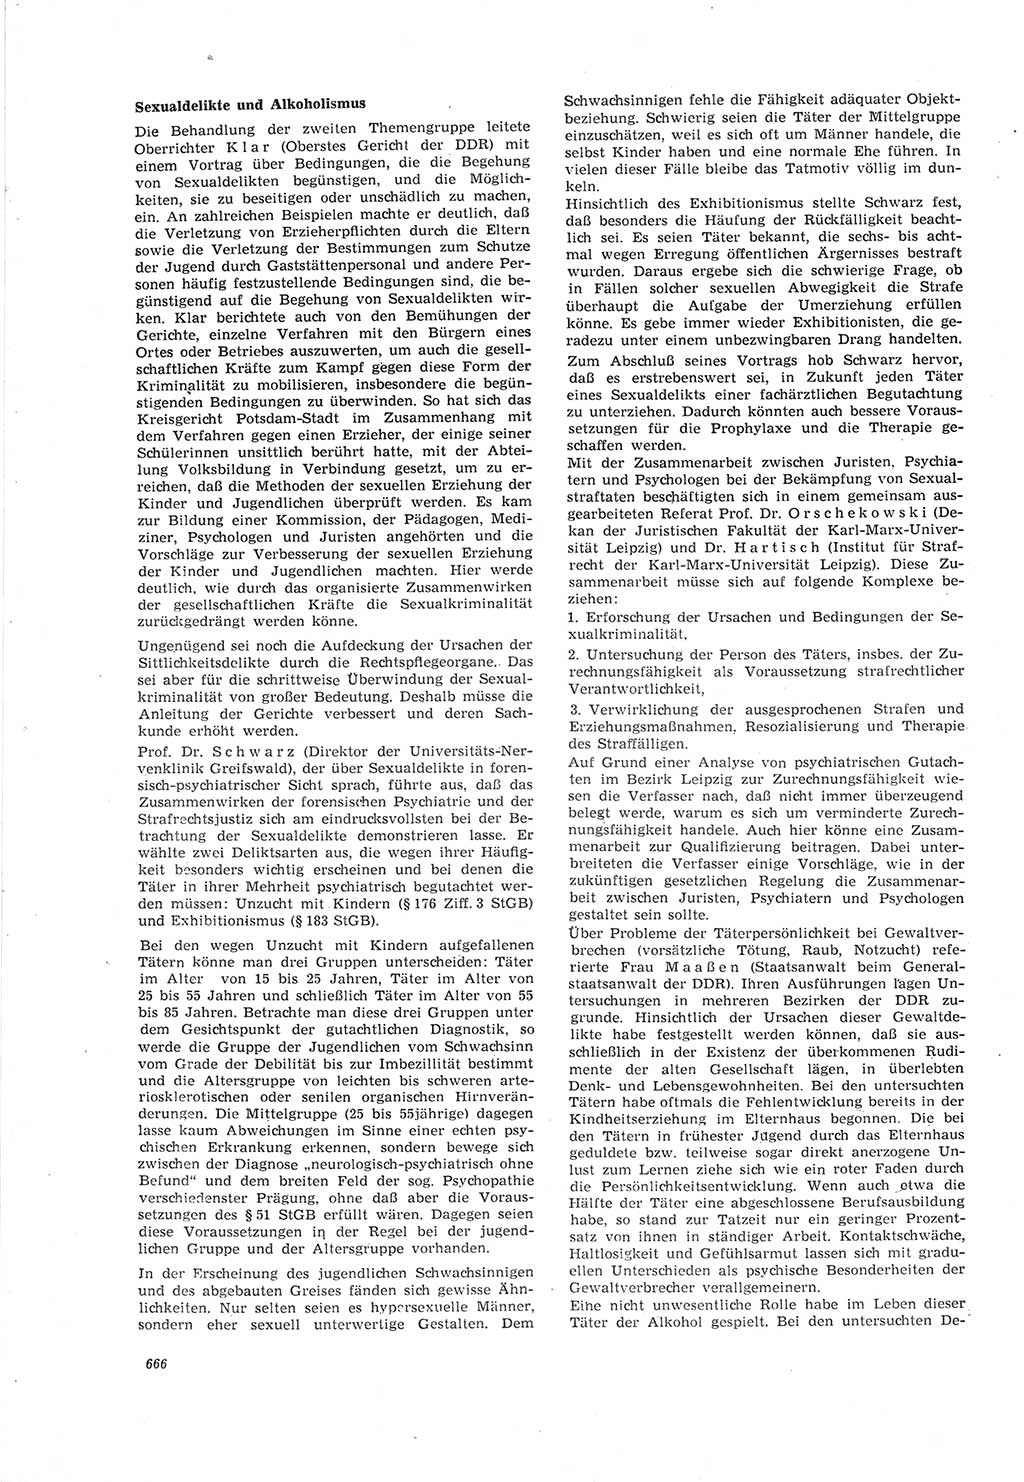 Neue Justiz (NJ), Zeitschrift für Recht und Rechtswissenschaft [Deutsche Demokratische Republik (DDR)], 18. Jahrgang 1964, Seite 666 (NJ DDR 1964, S. 666)